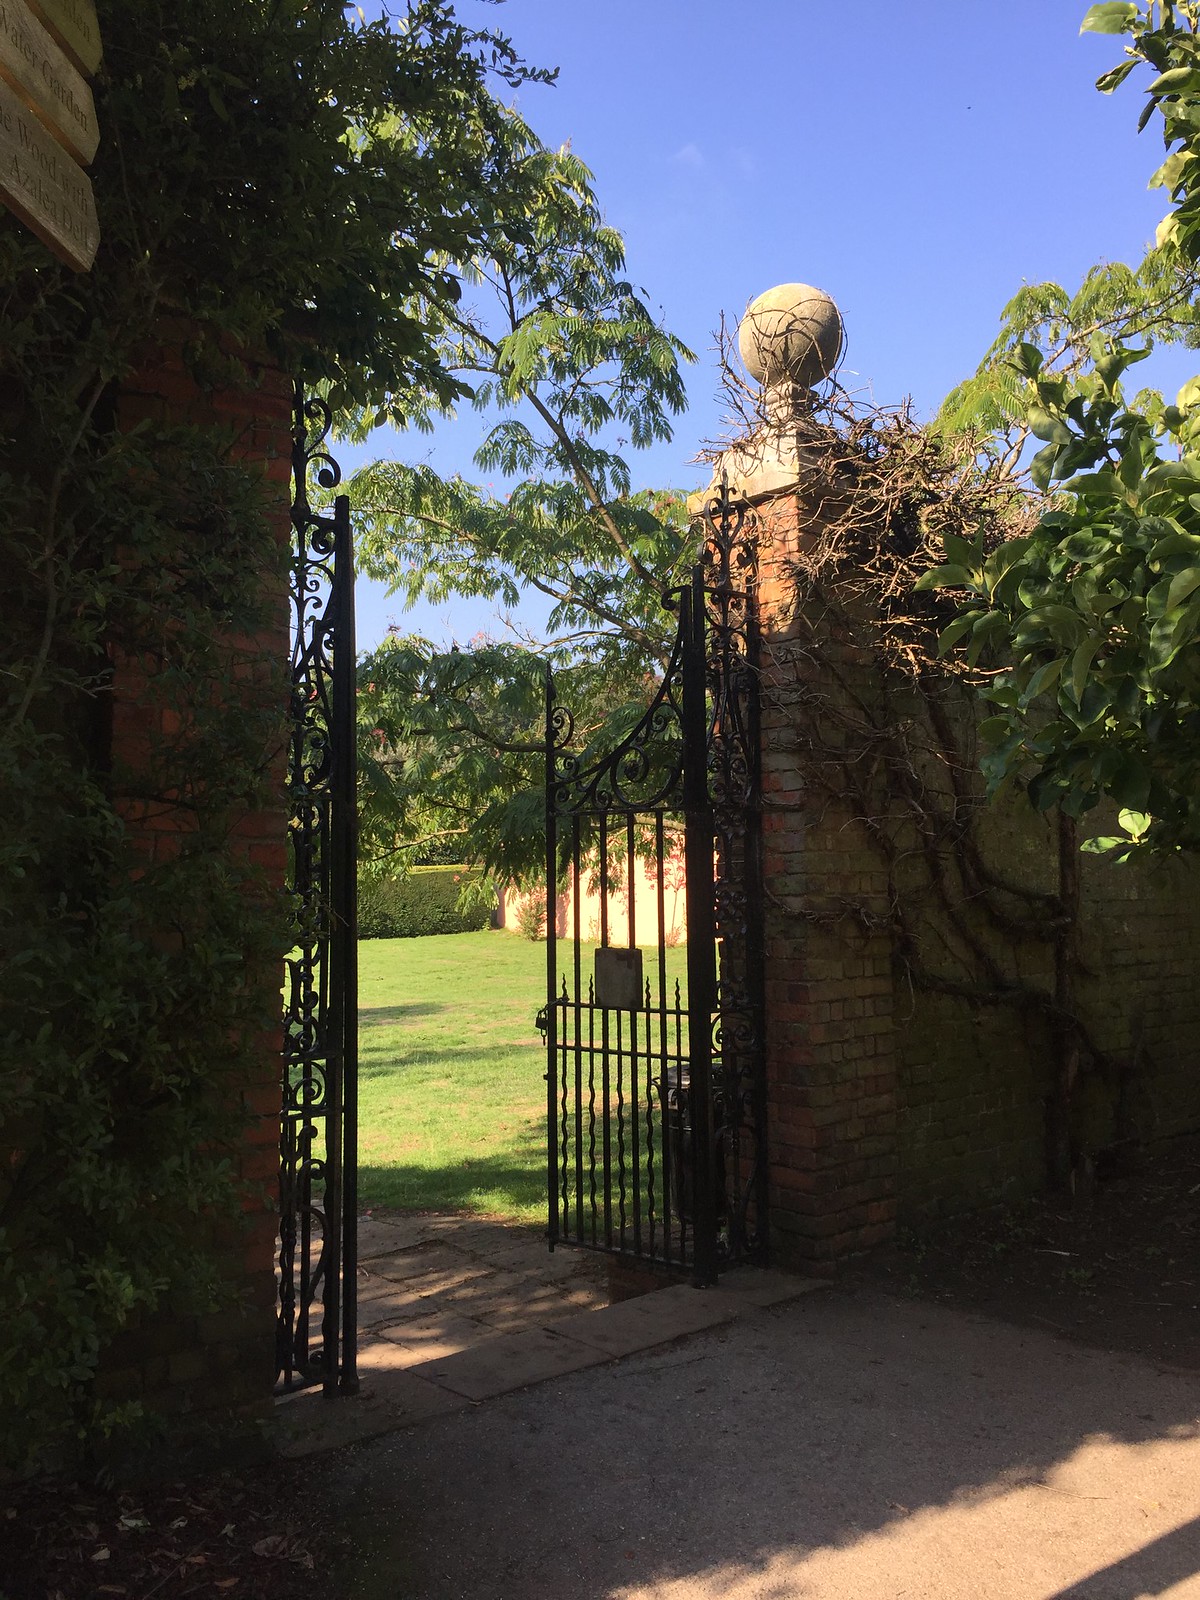 Entrance to Italian Garden